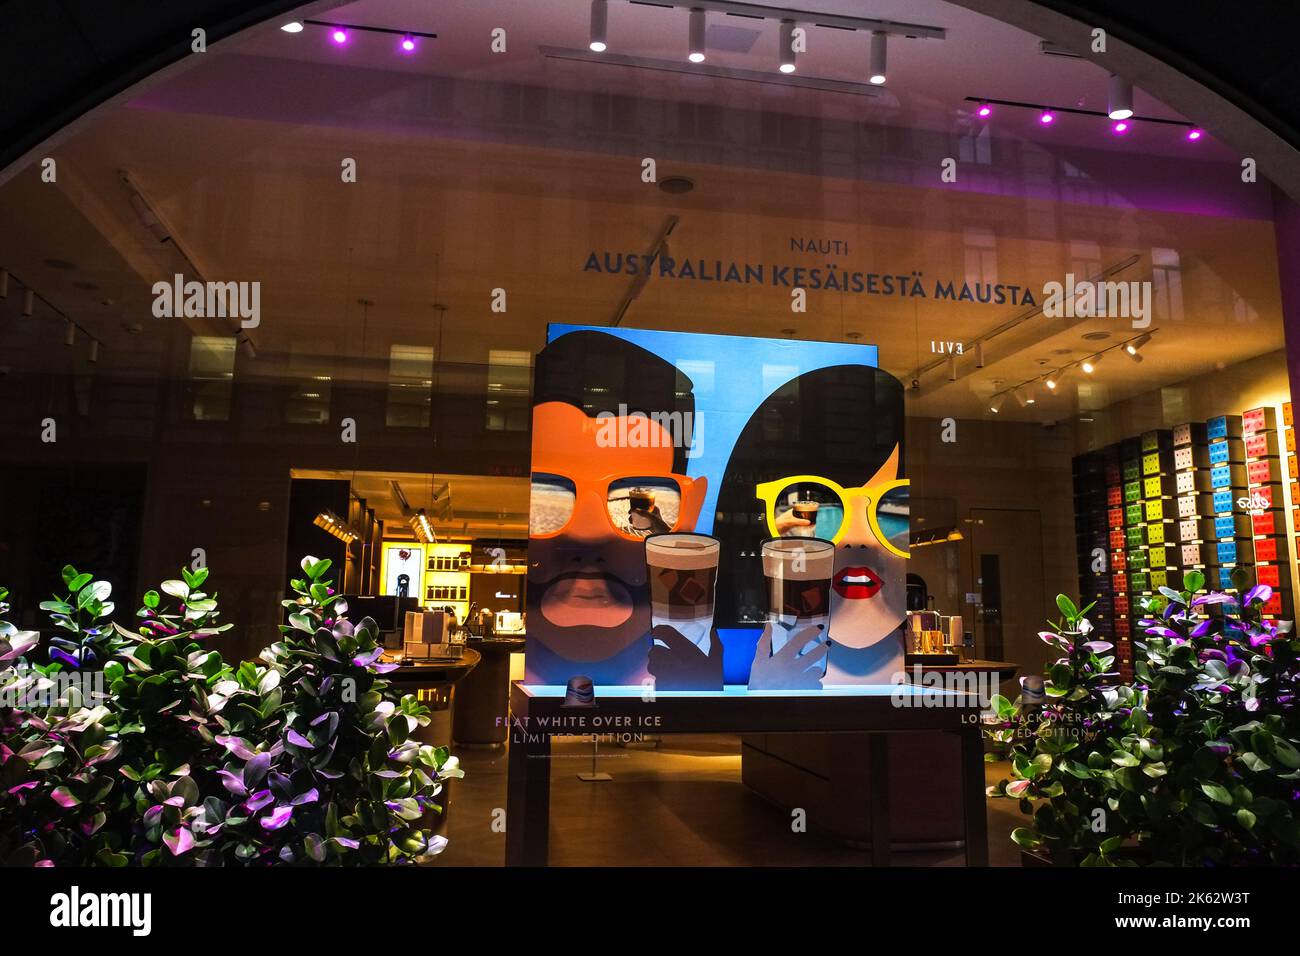 Stockmanns Department Store, Helsinki, Finlandia, mostra la pubblicità del caffè australiano Foto Stock